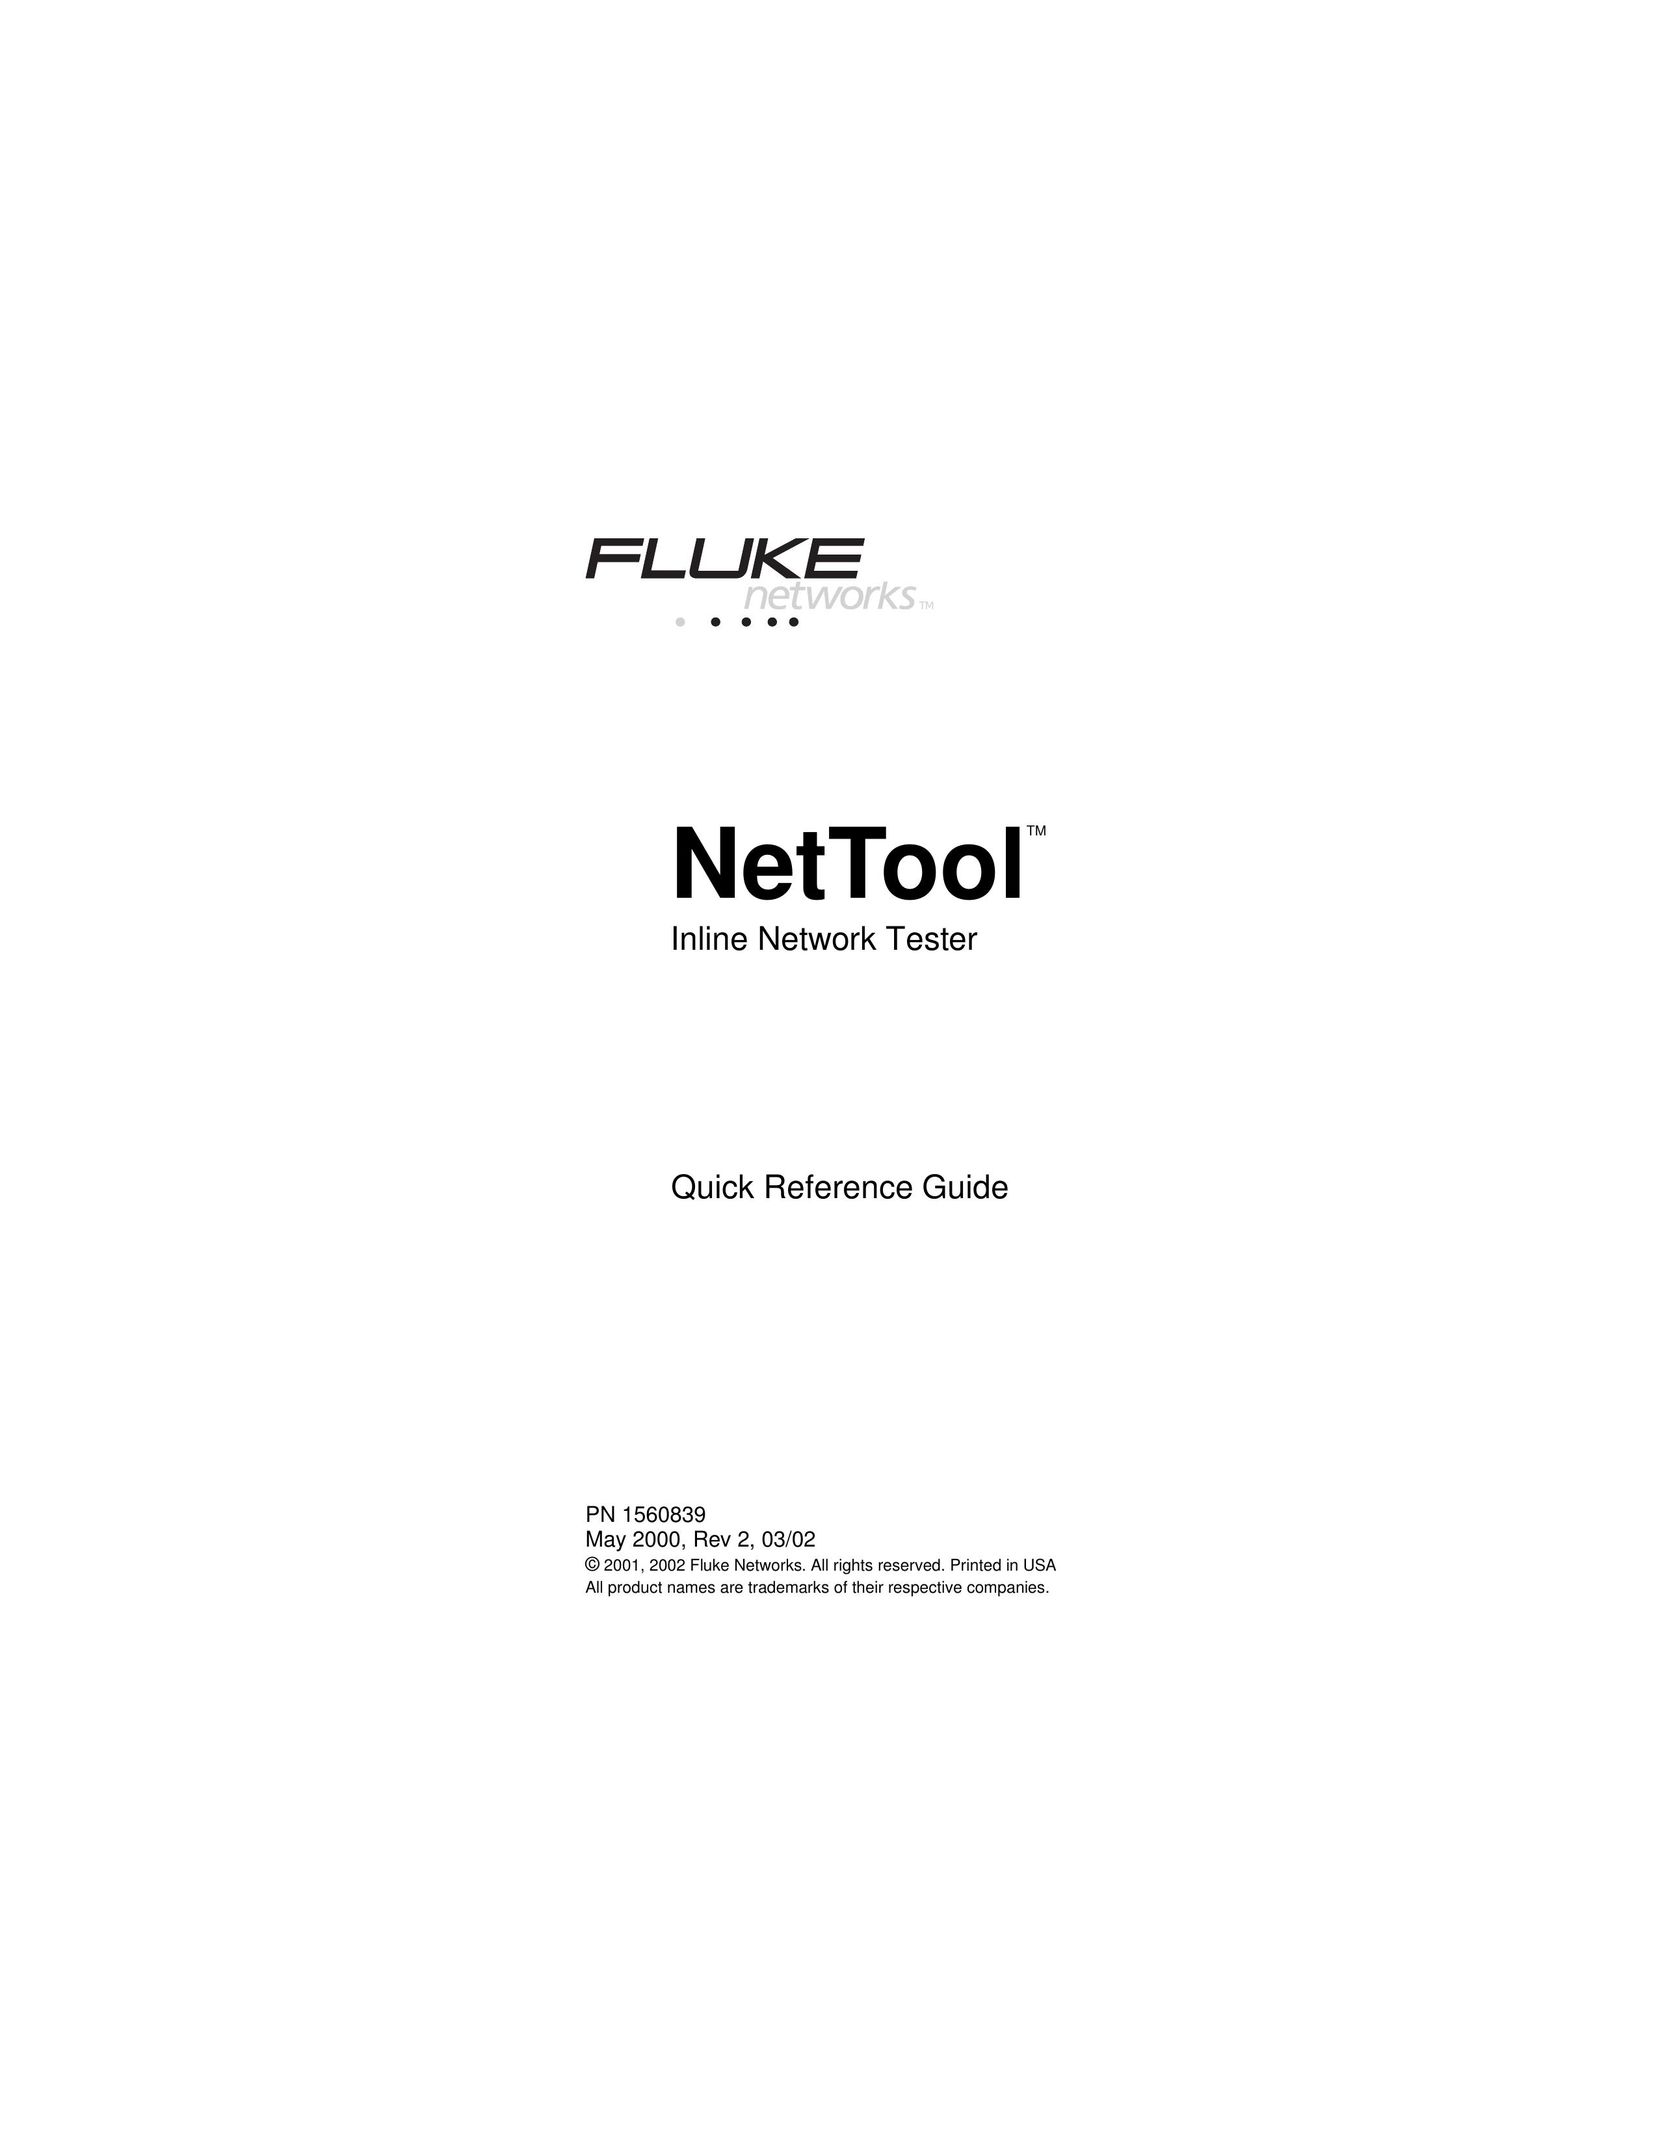 Fluke NetTool Network Card User Manual